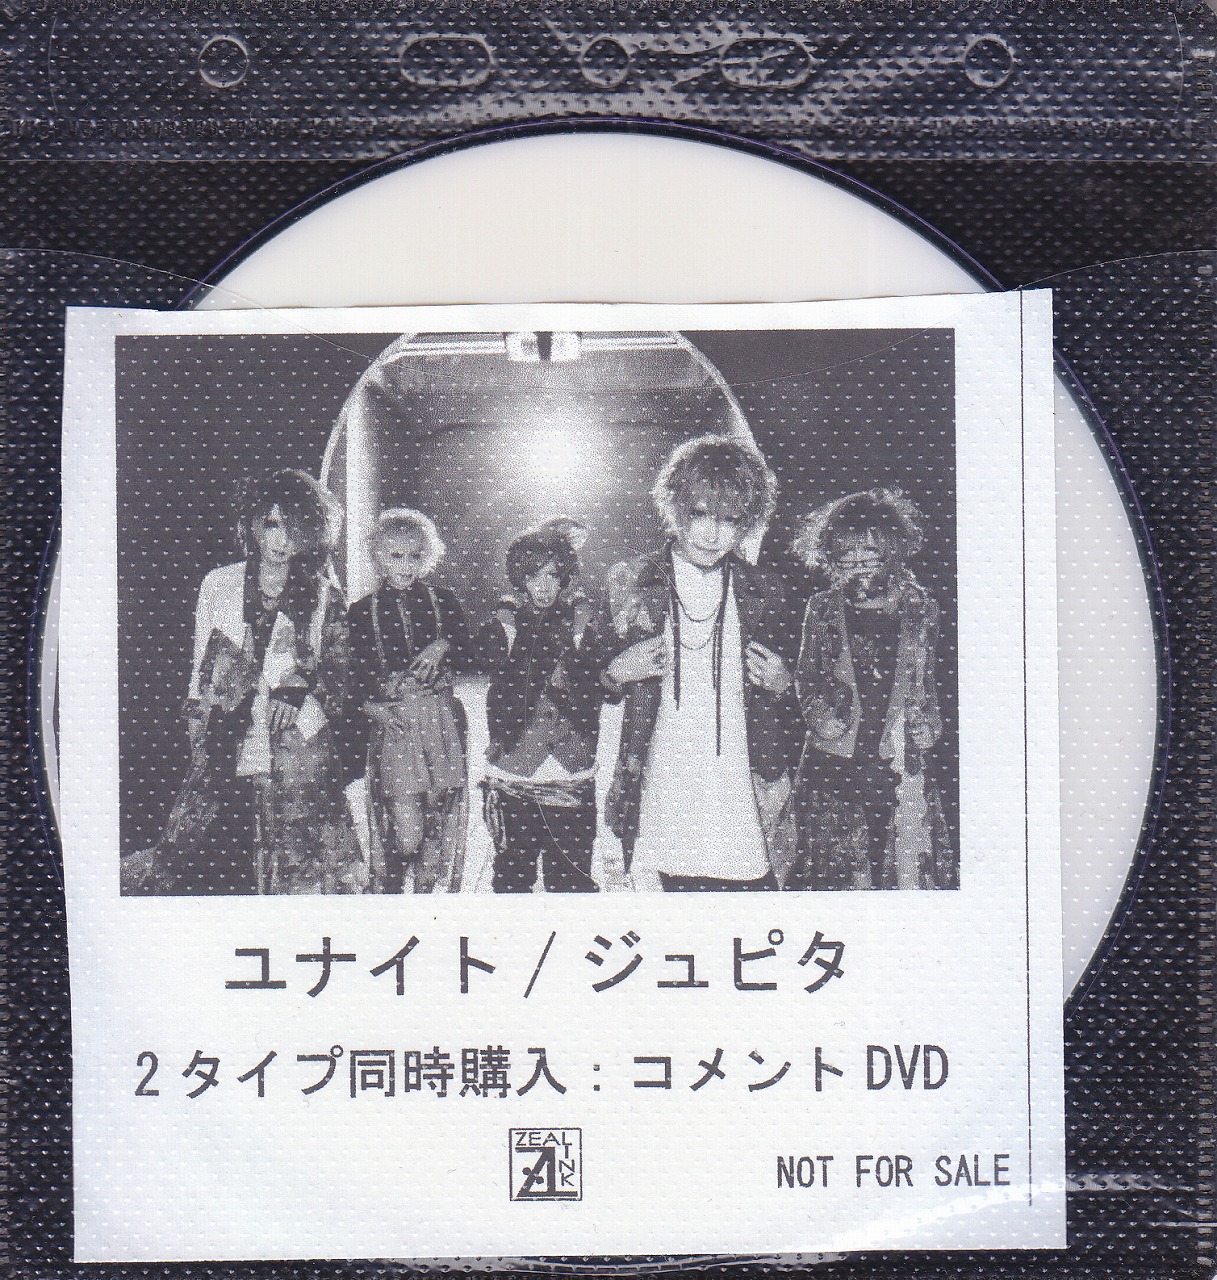 ユナイト ( ユナイト )  の DVD 【ZEAL LINK】ジュピタ 2タイプ同時購入:コメントDVD